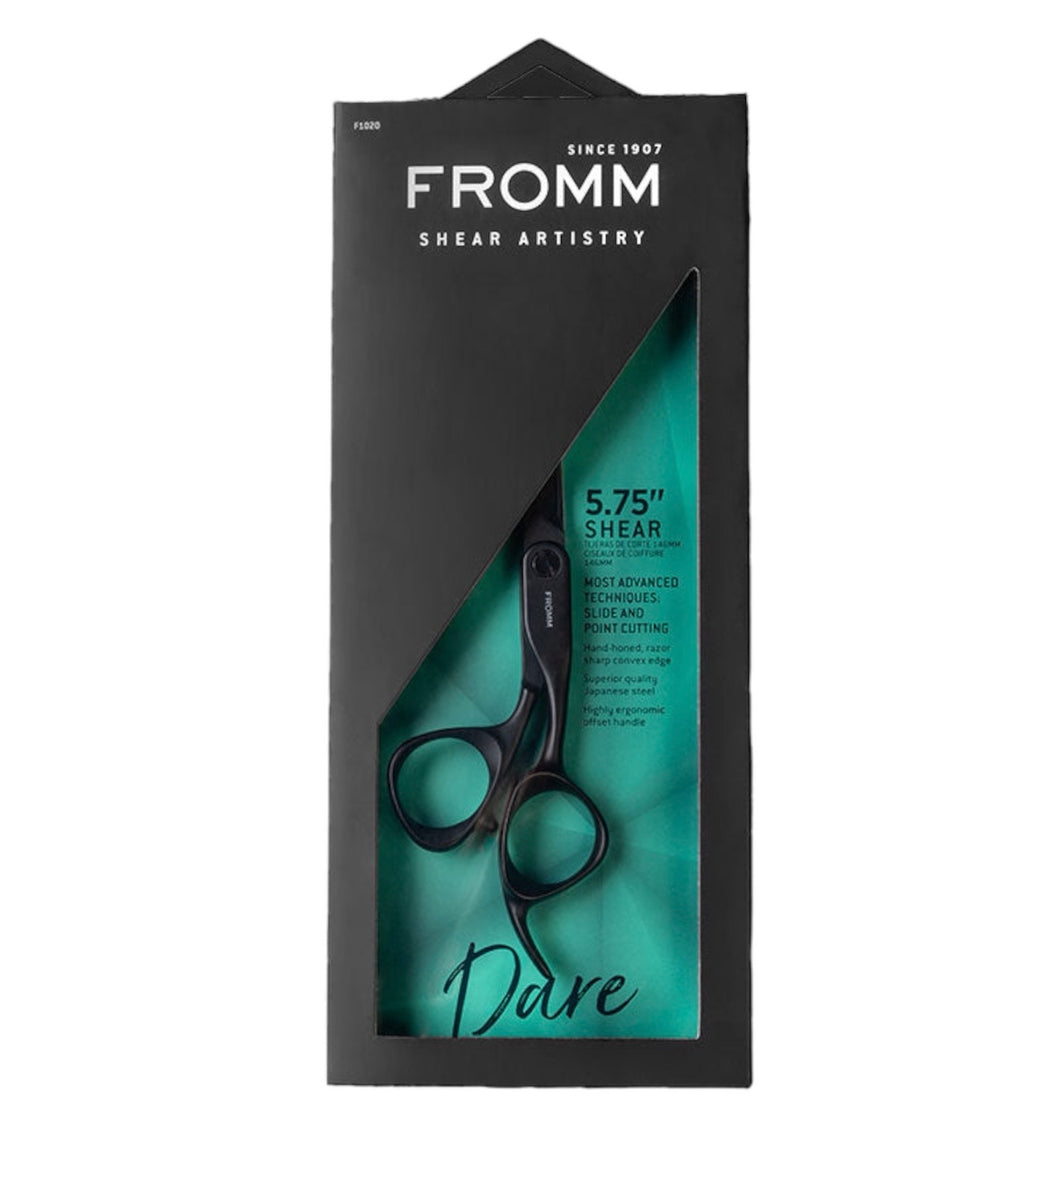 FROMM DARE 5.75” HAIR CUTTING SHEAR F1020